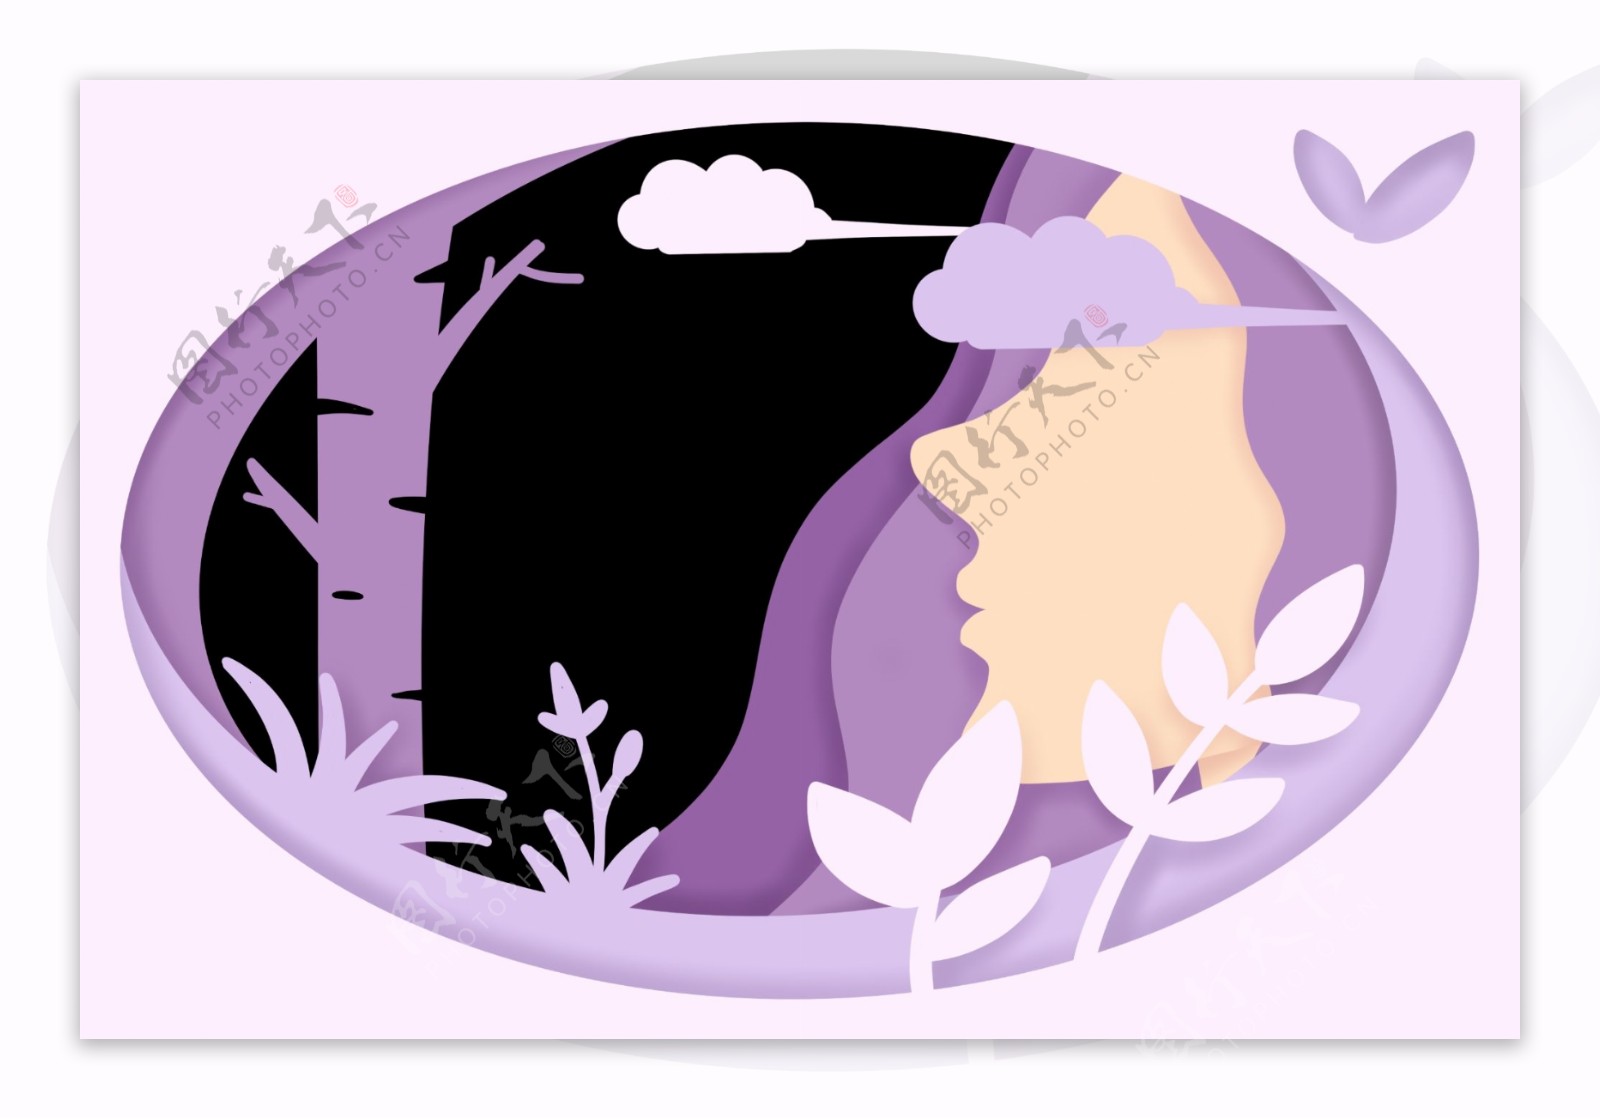 紫色椭圆形女神节边框